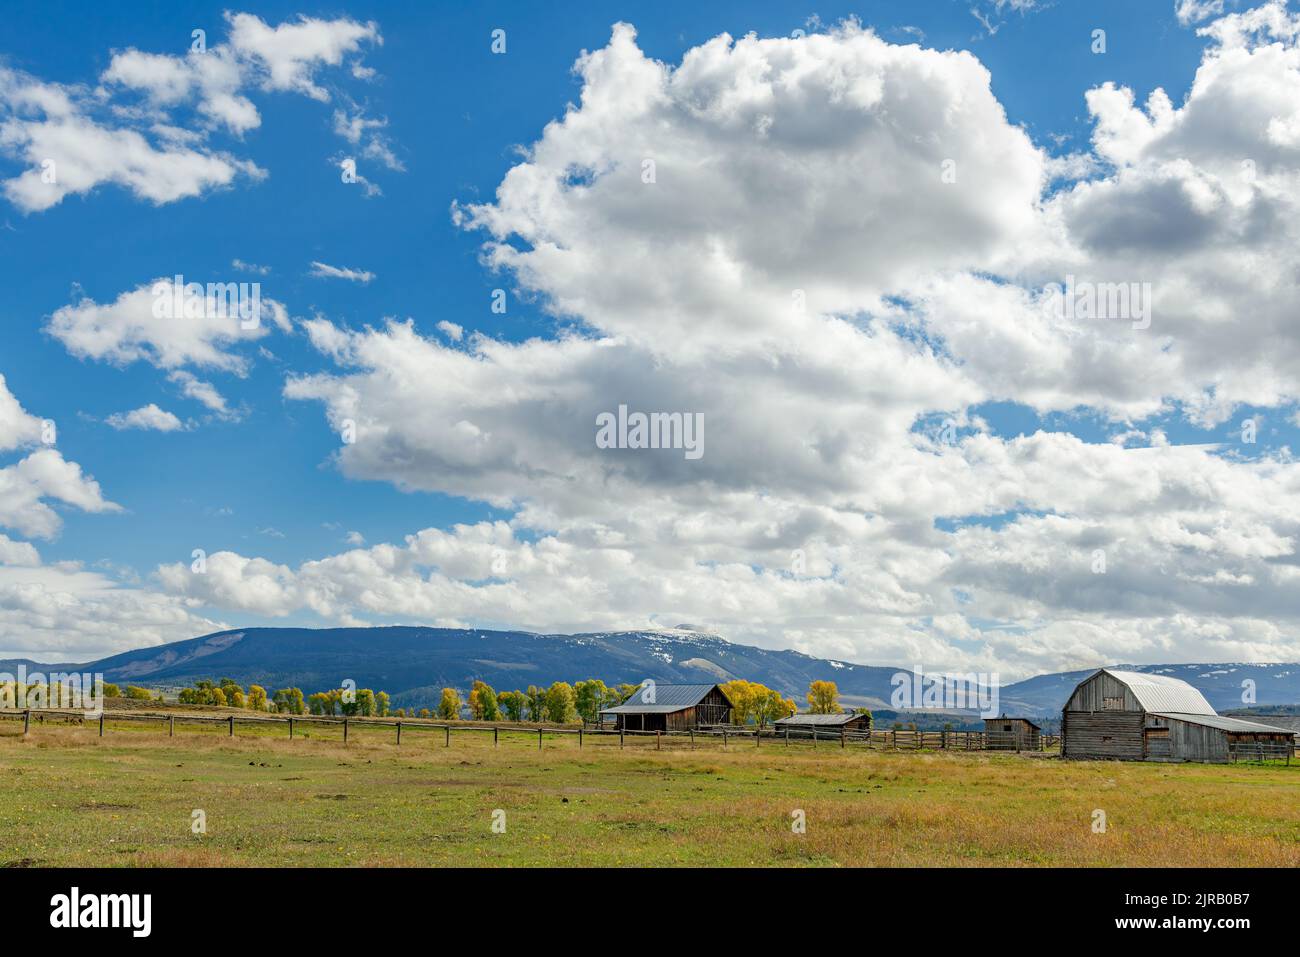 Jackson, Wyoming, États-Unis - 1 octobre 2013. T. A. Molton Barn et dépendances près de Jackson Wyoming sur 1 octobre 2013 Banque D'Images